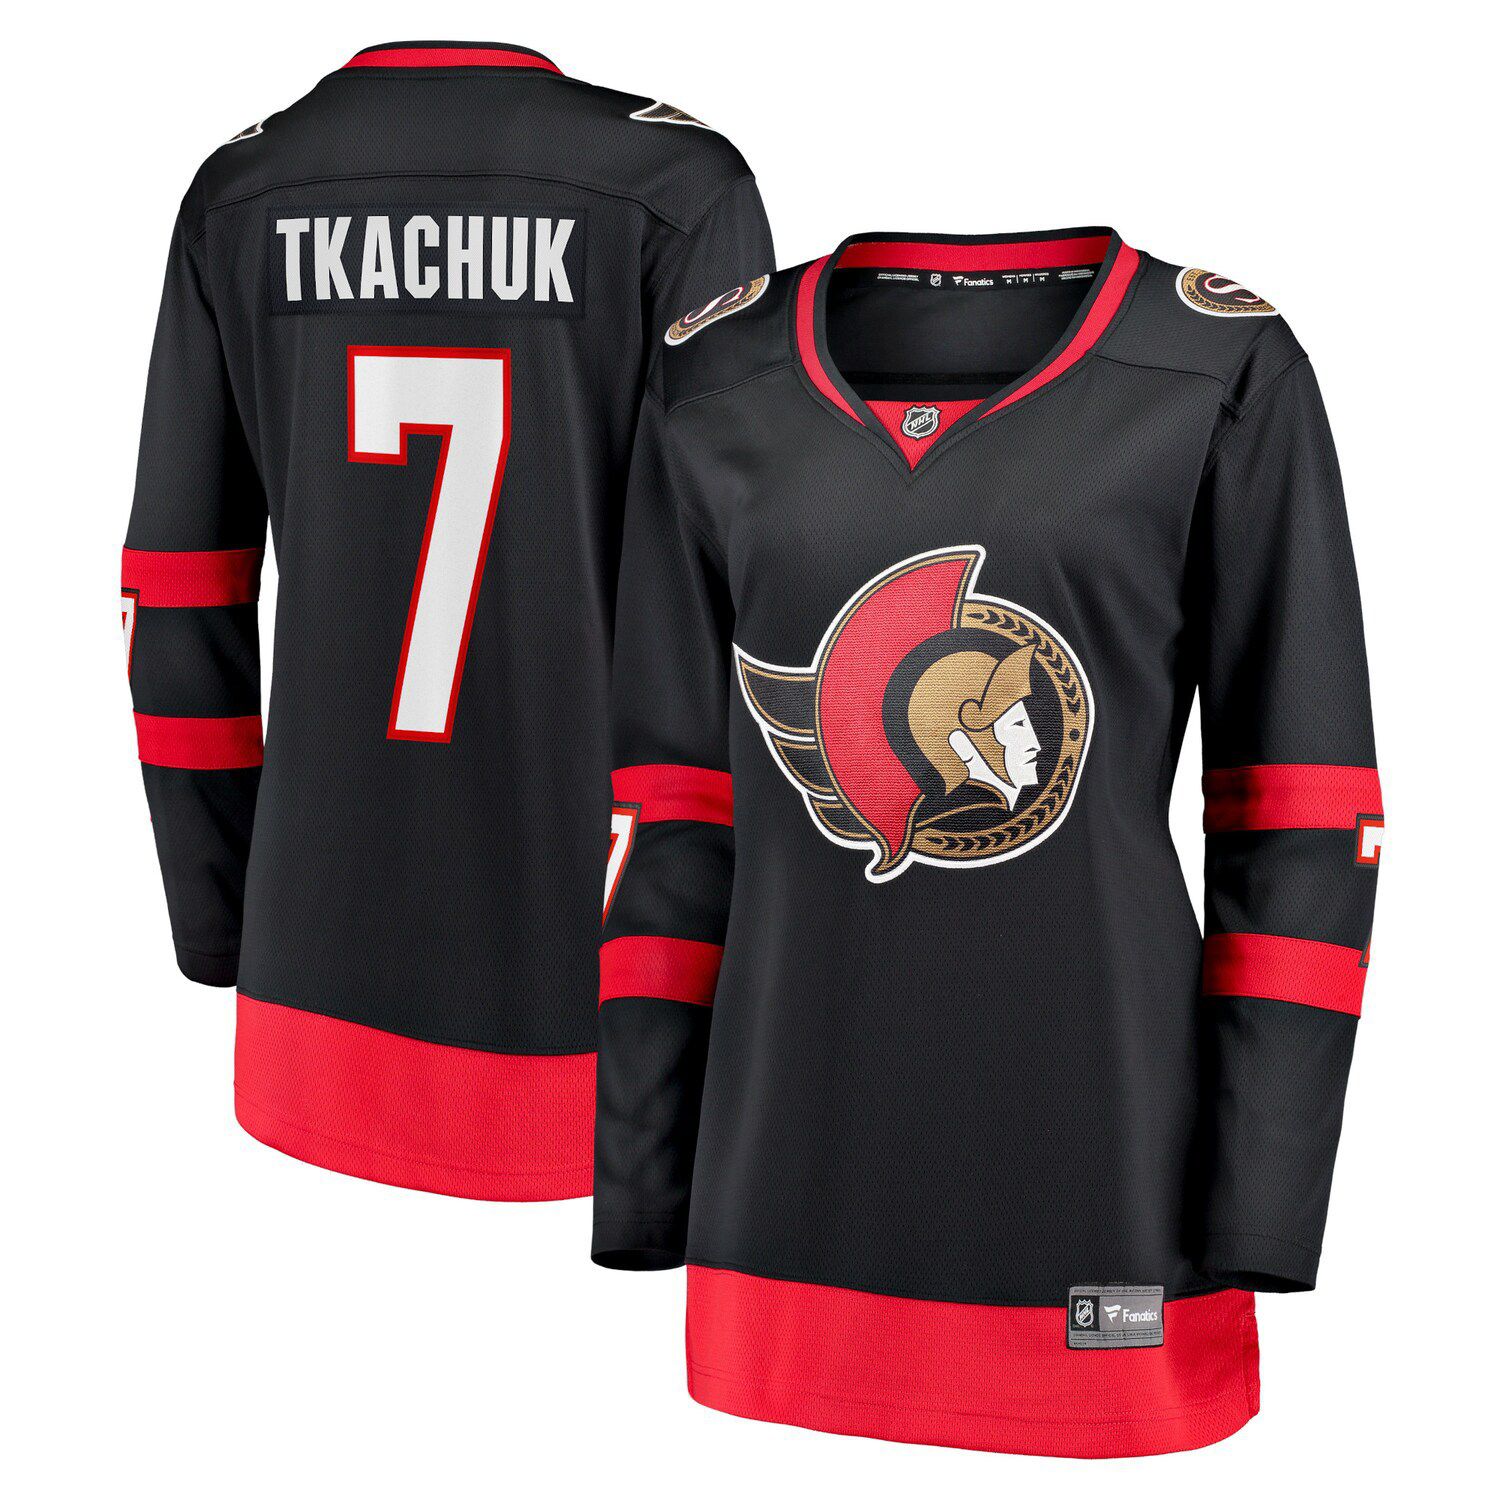 Outerstuff Brady Tkachuk Ottawa Senators Youth 2020/21 Home Replica Player Jersey - Black